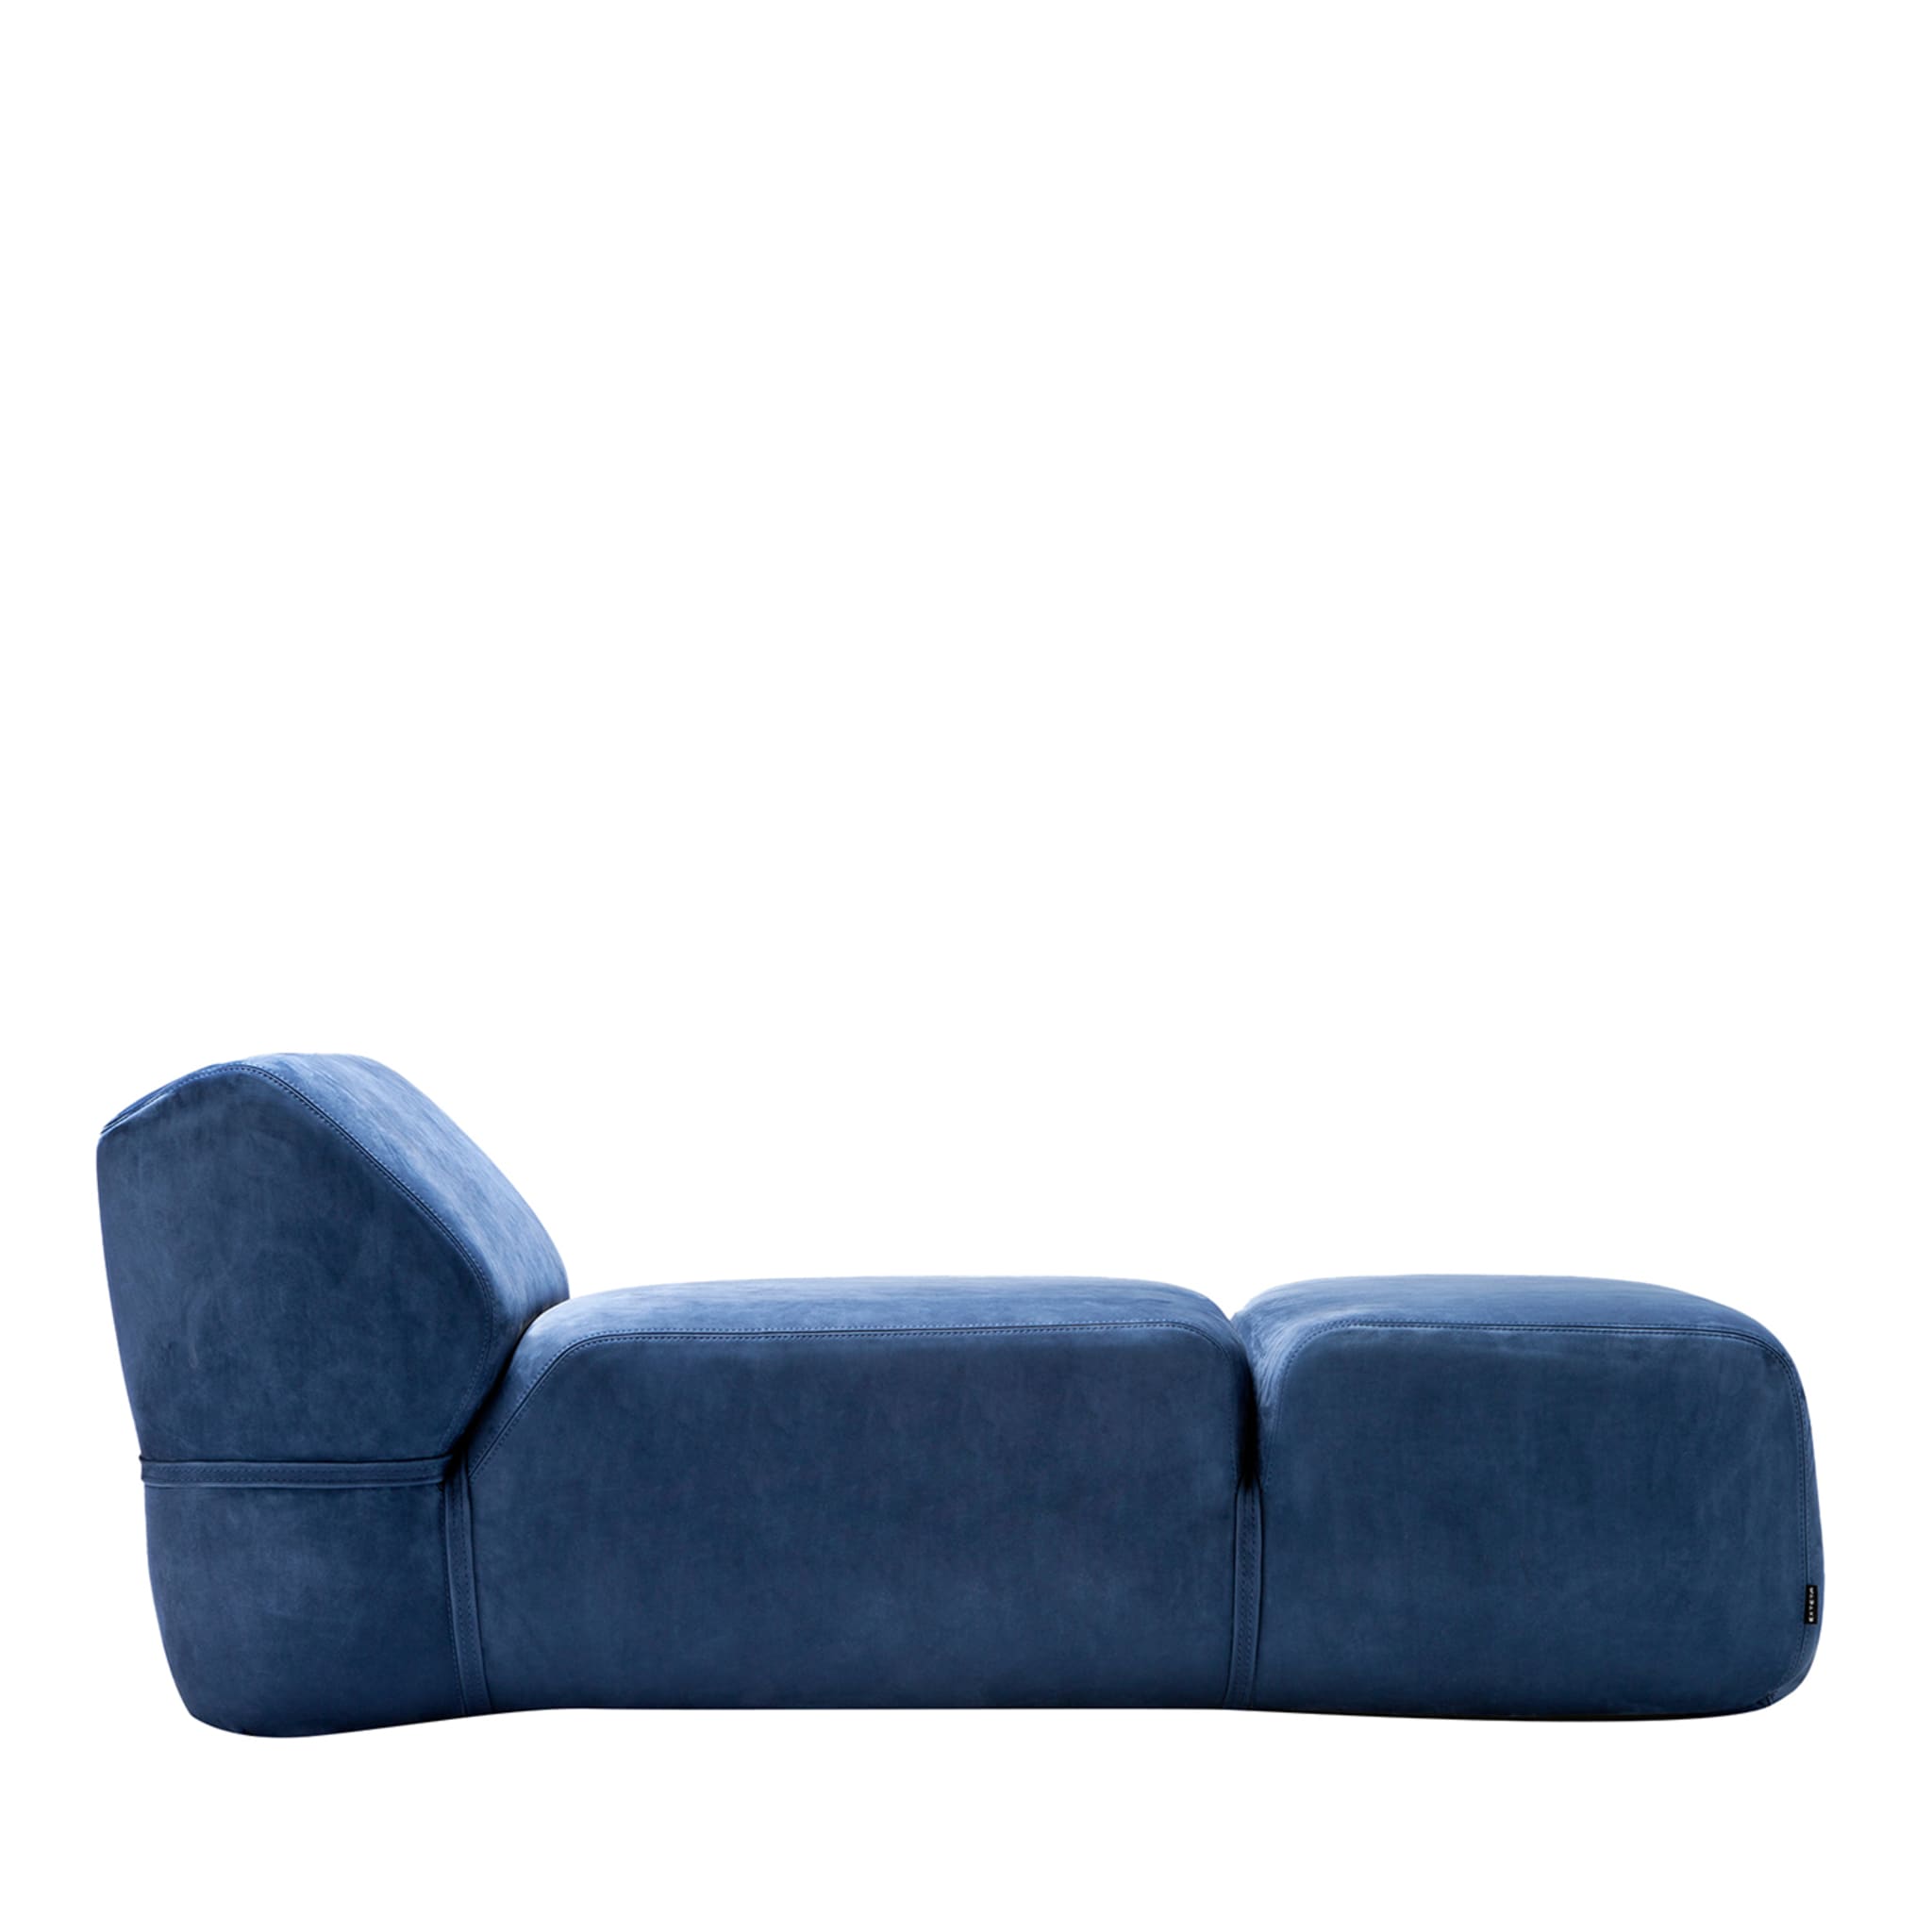 Blaue weiche chaise longue von Ludovica + Roberto Palomba - Hauptansicht